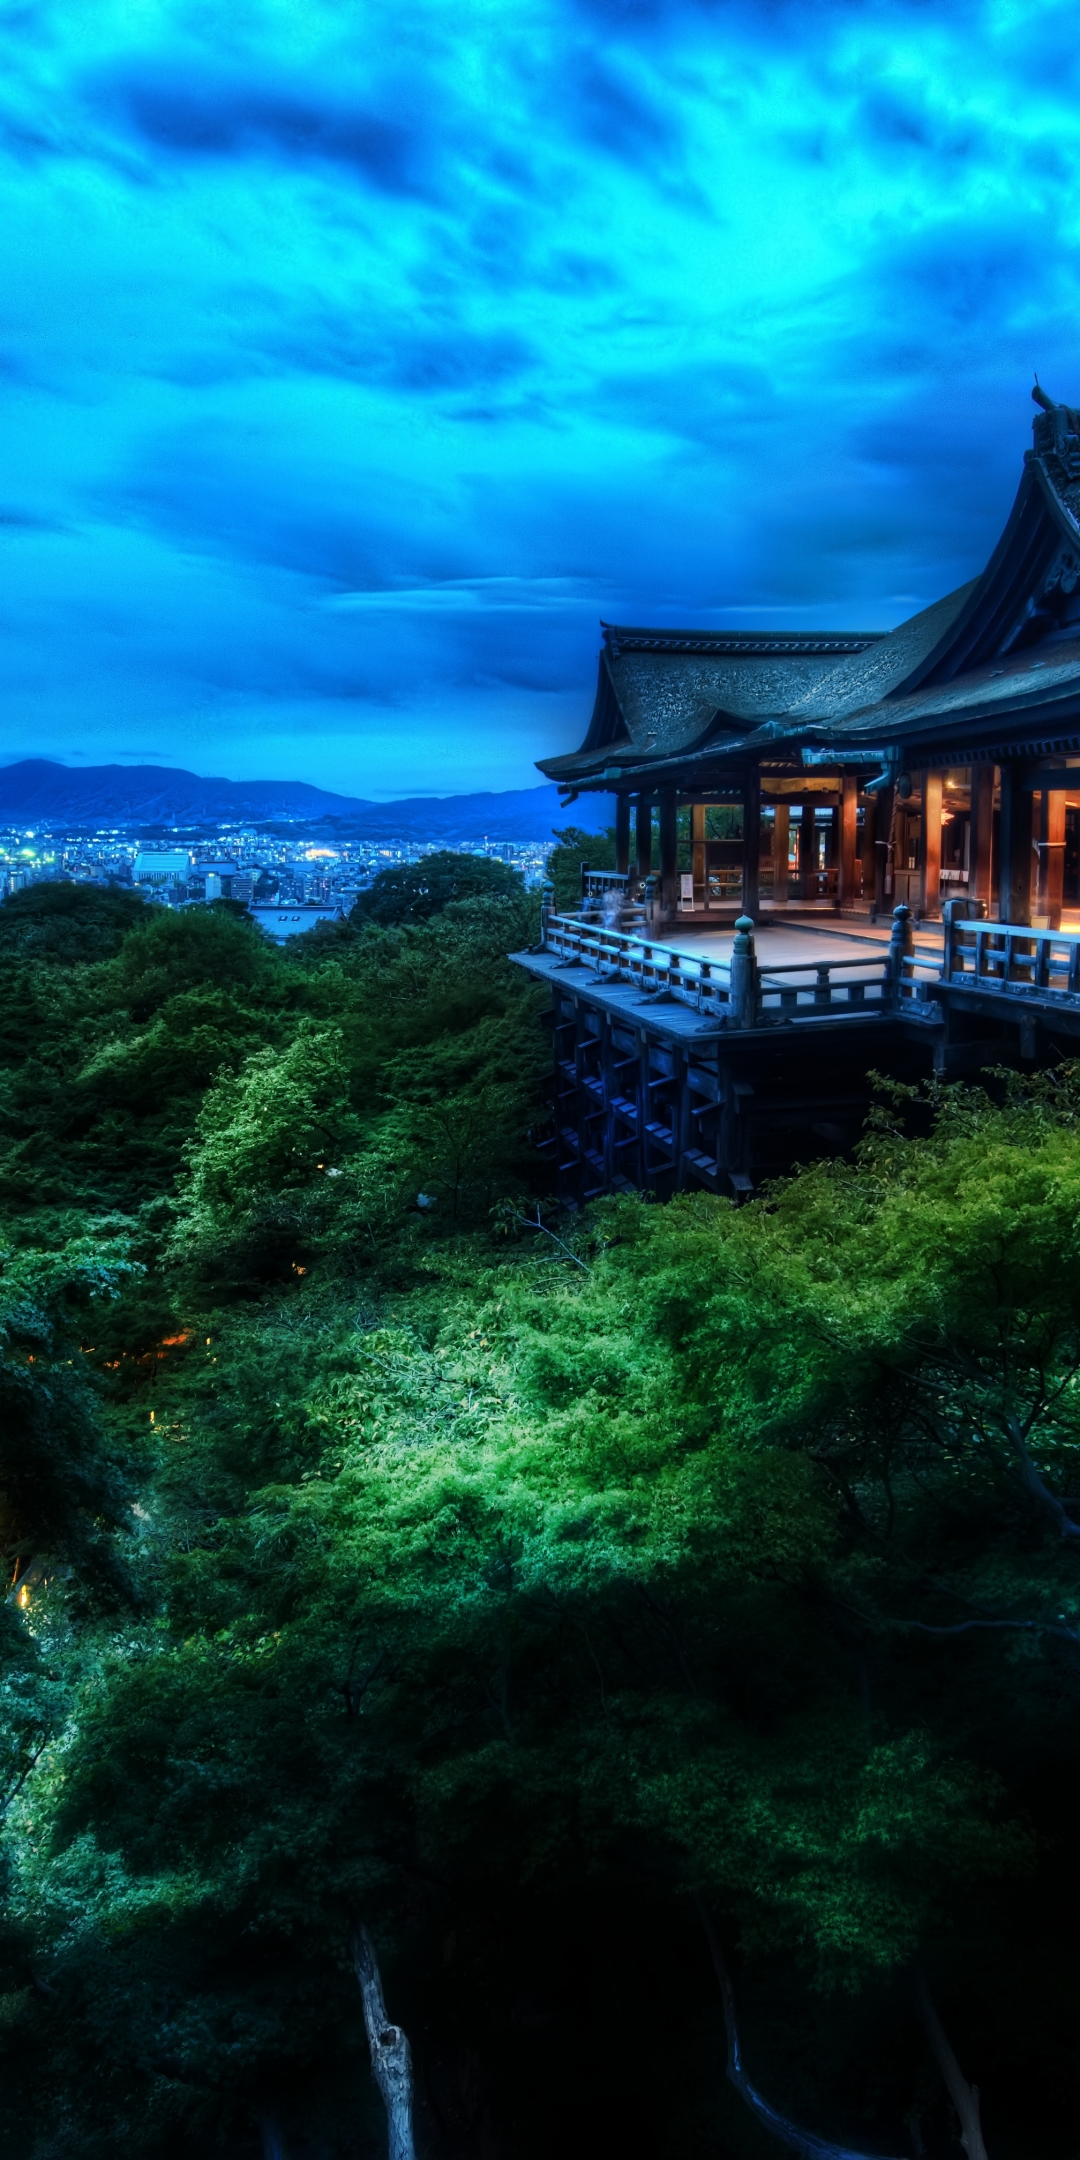 otowa san kiyomizu dera, japan, religious, kiyomizu dera, architecture, temple, kyoto, buddhist temple, night, temples